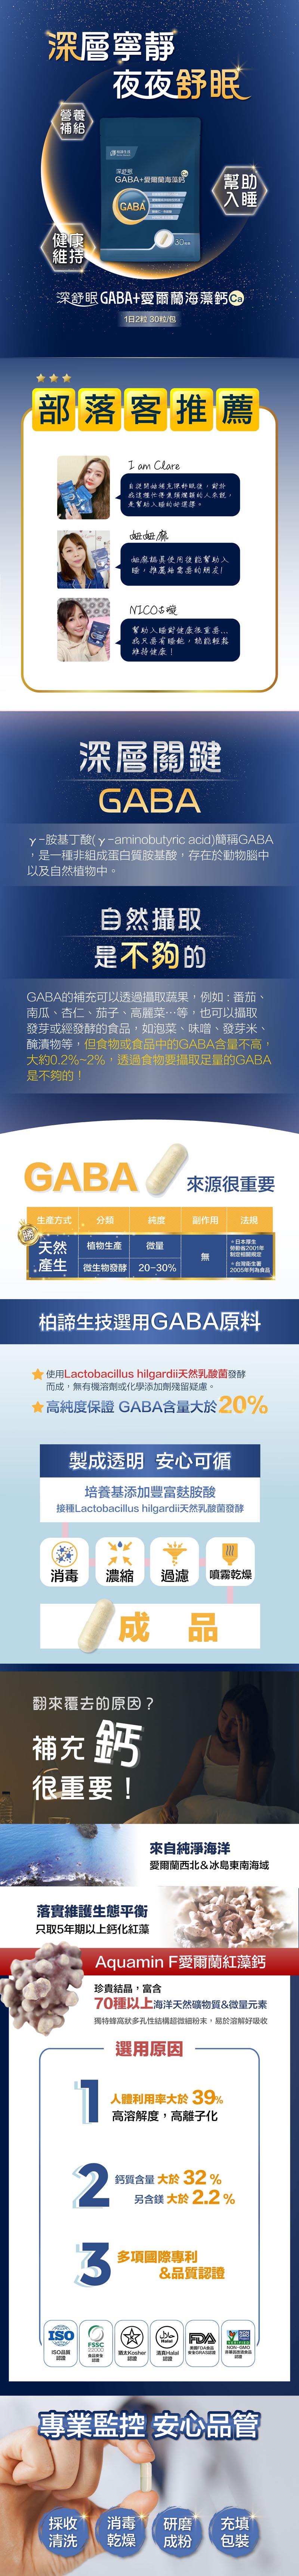 GABA字卡01_20201208_S.jpg